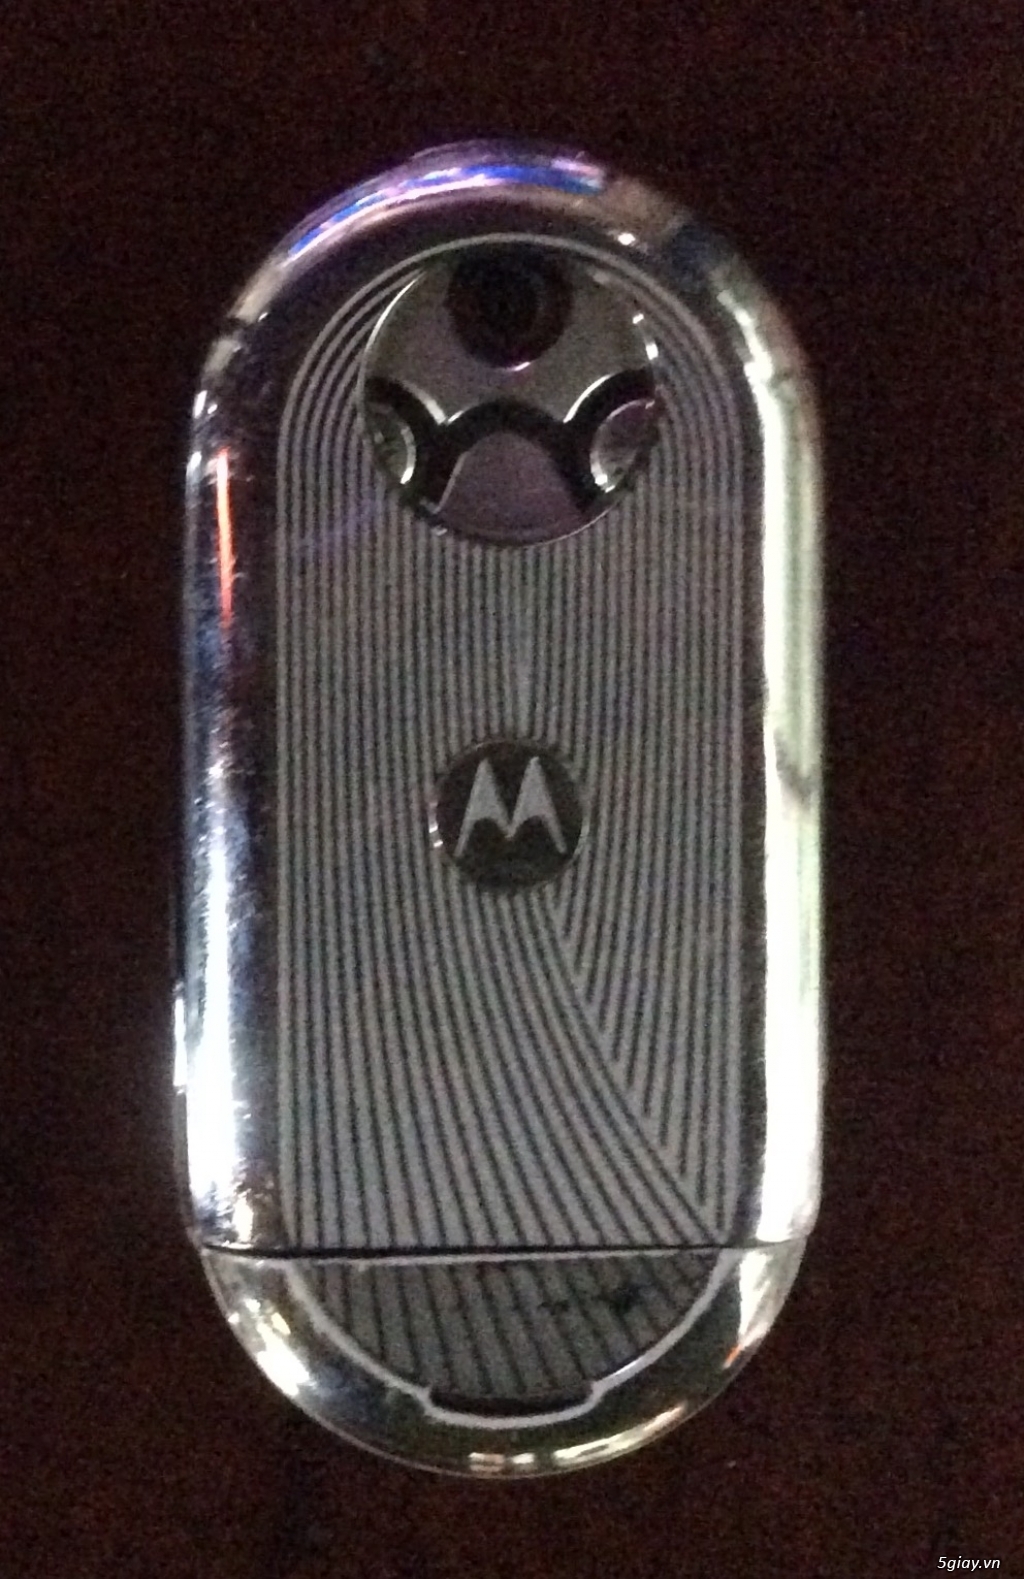 Motorola aura - đẳng cấp ko thể bị nhái hay bi dựng - 1